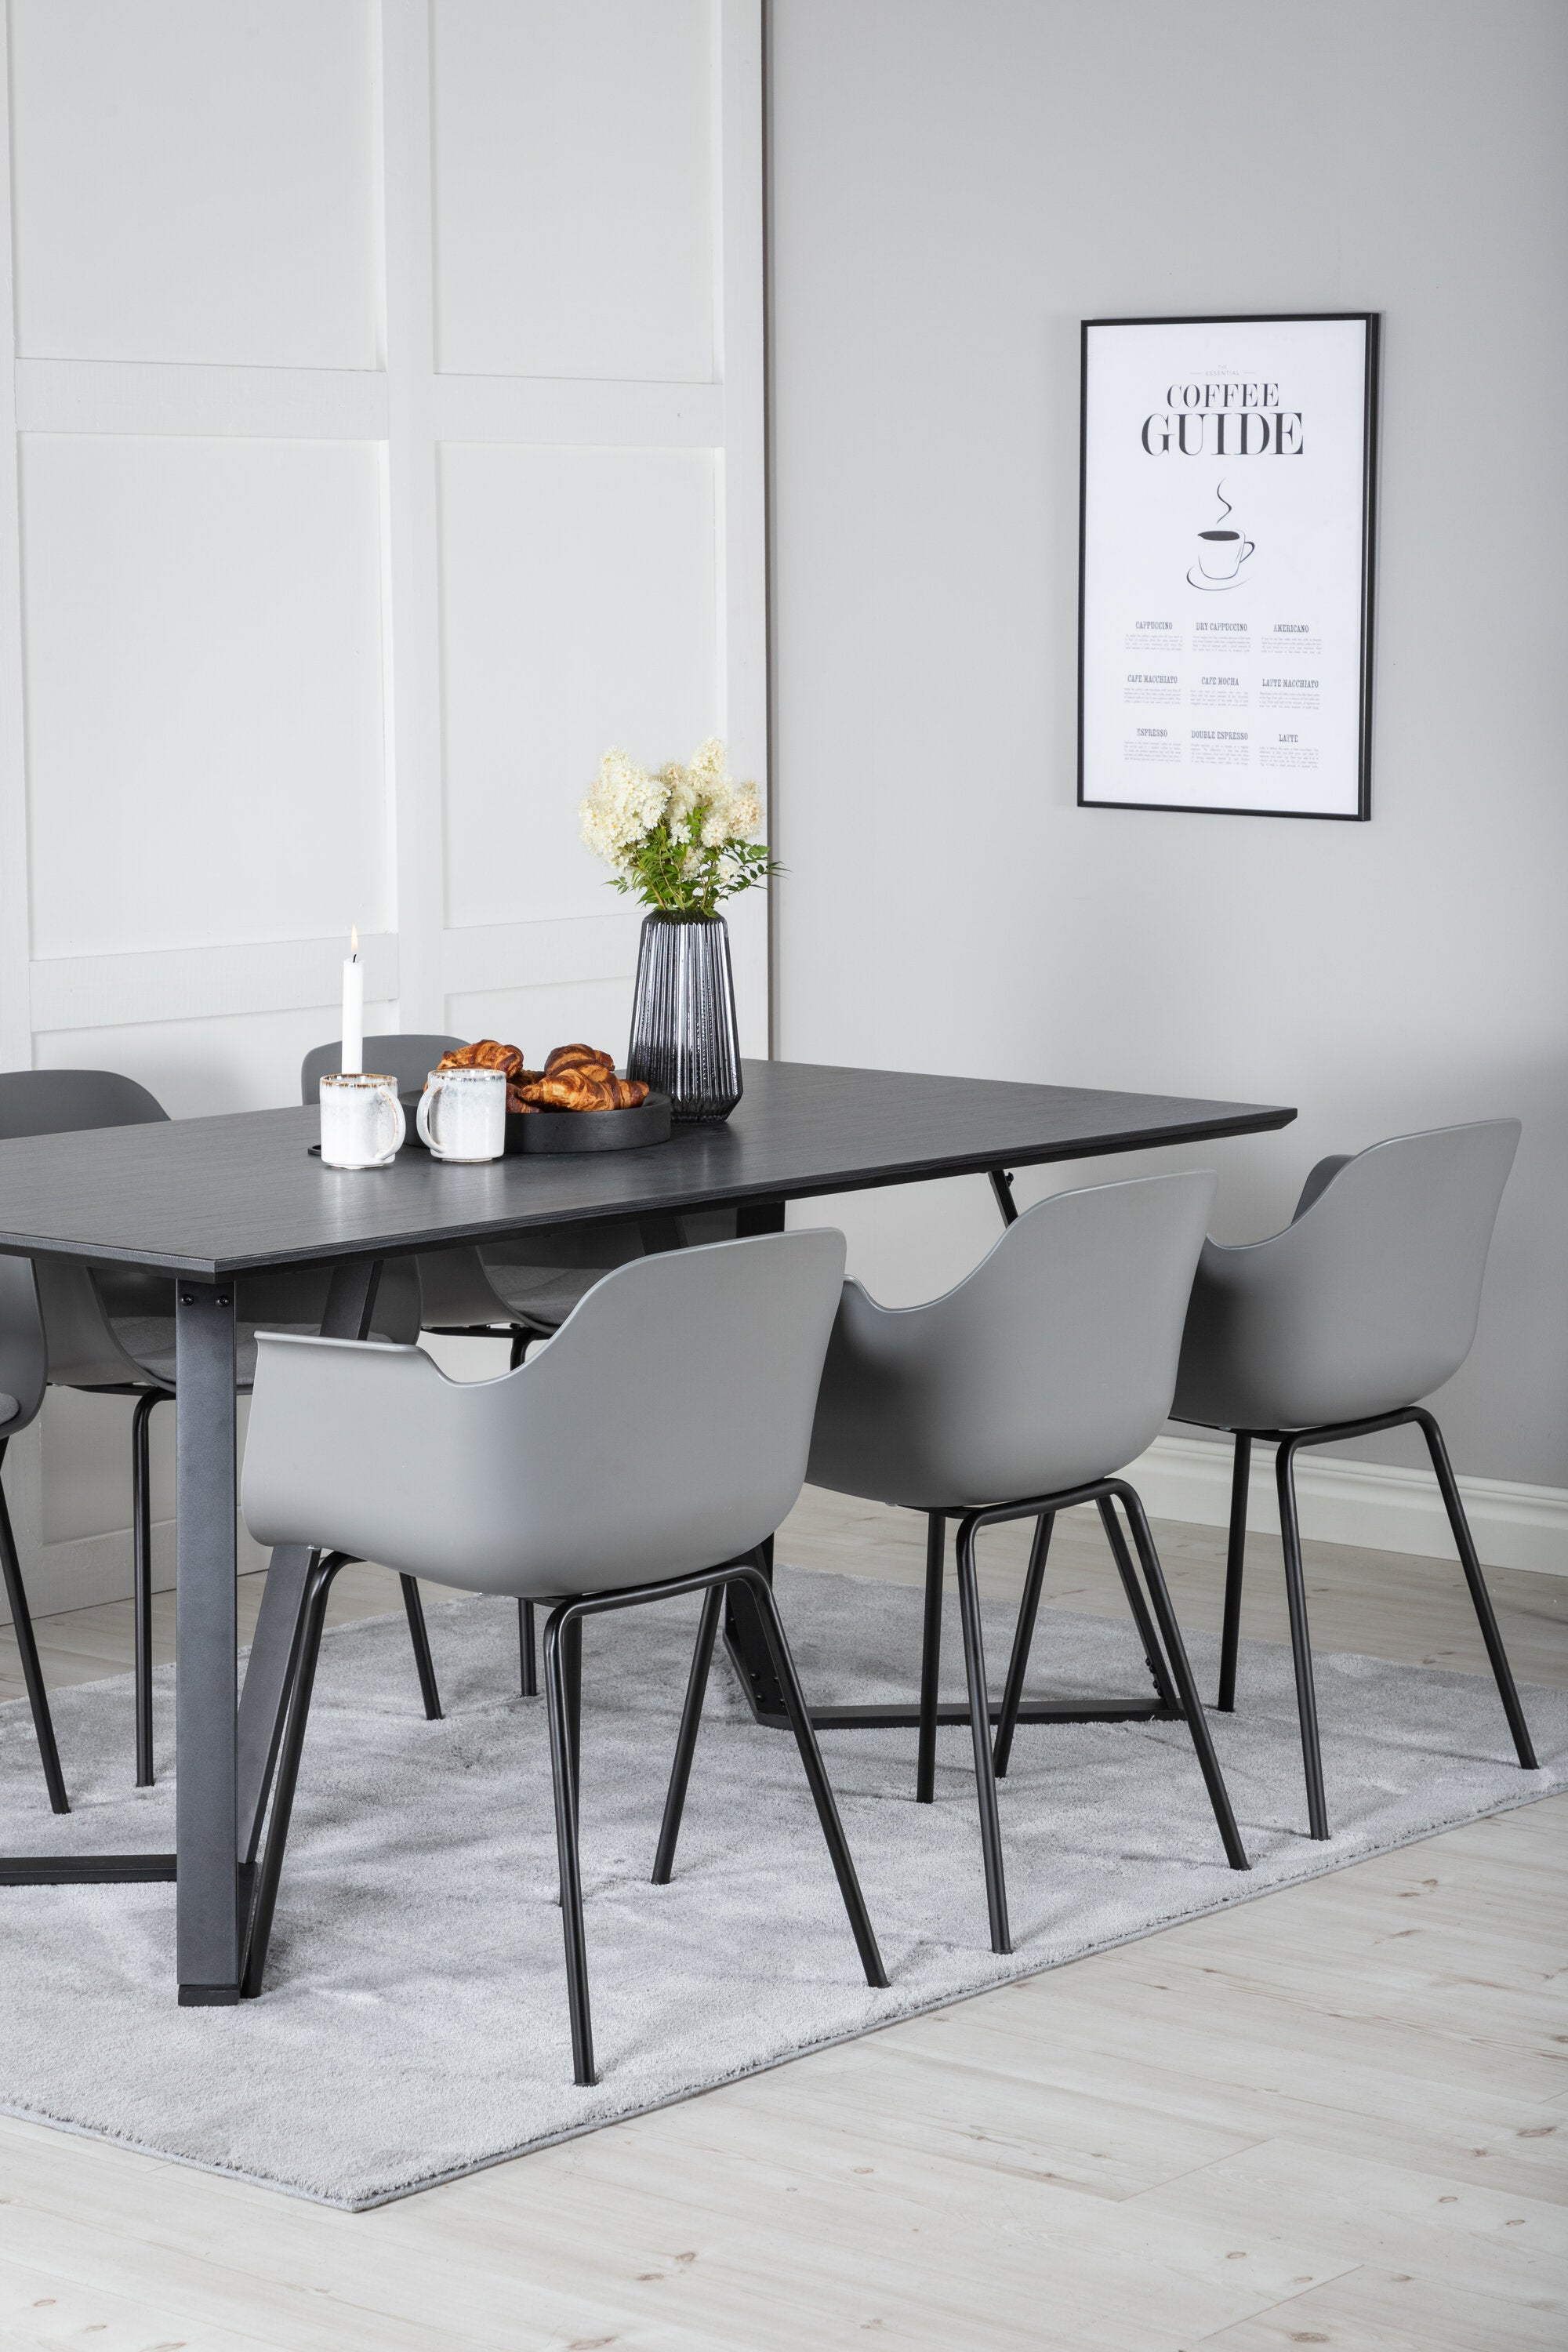 Marina Esszimmerset Comfort 180cm/6St. in Schwarzgrau präsentiert im Onlineshop von KAQTU Design AG. Esszimmerset ist von Venture Home